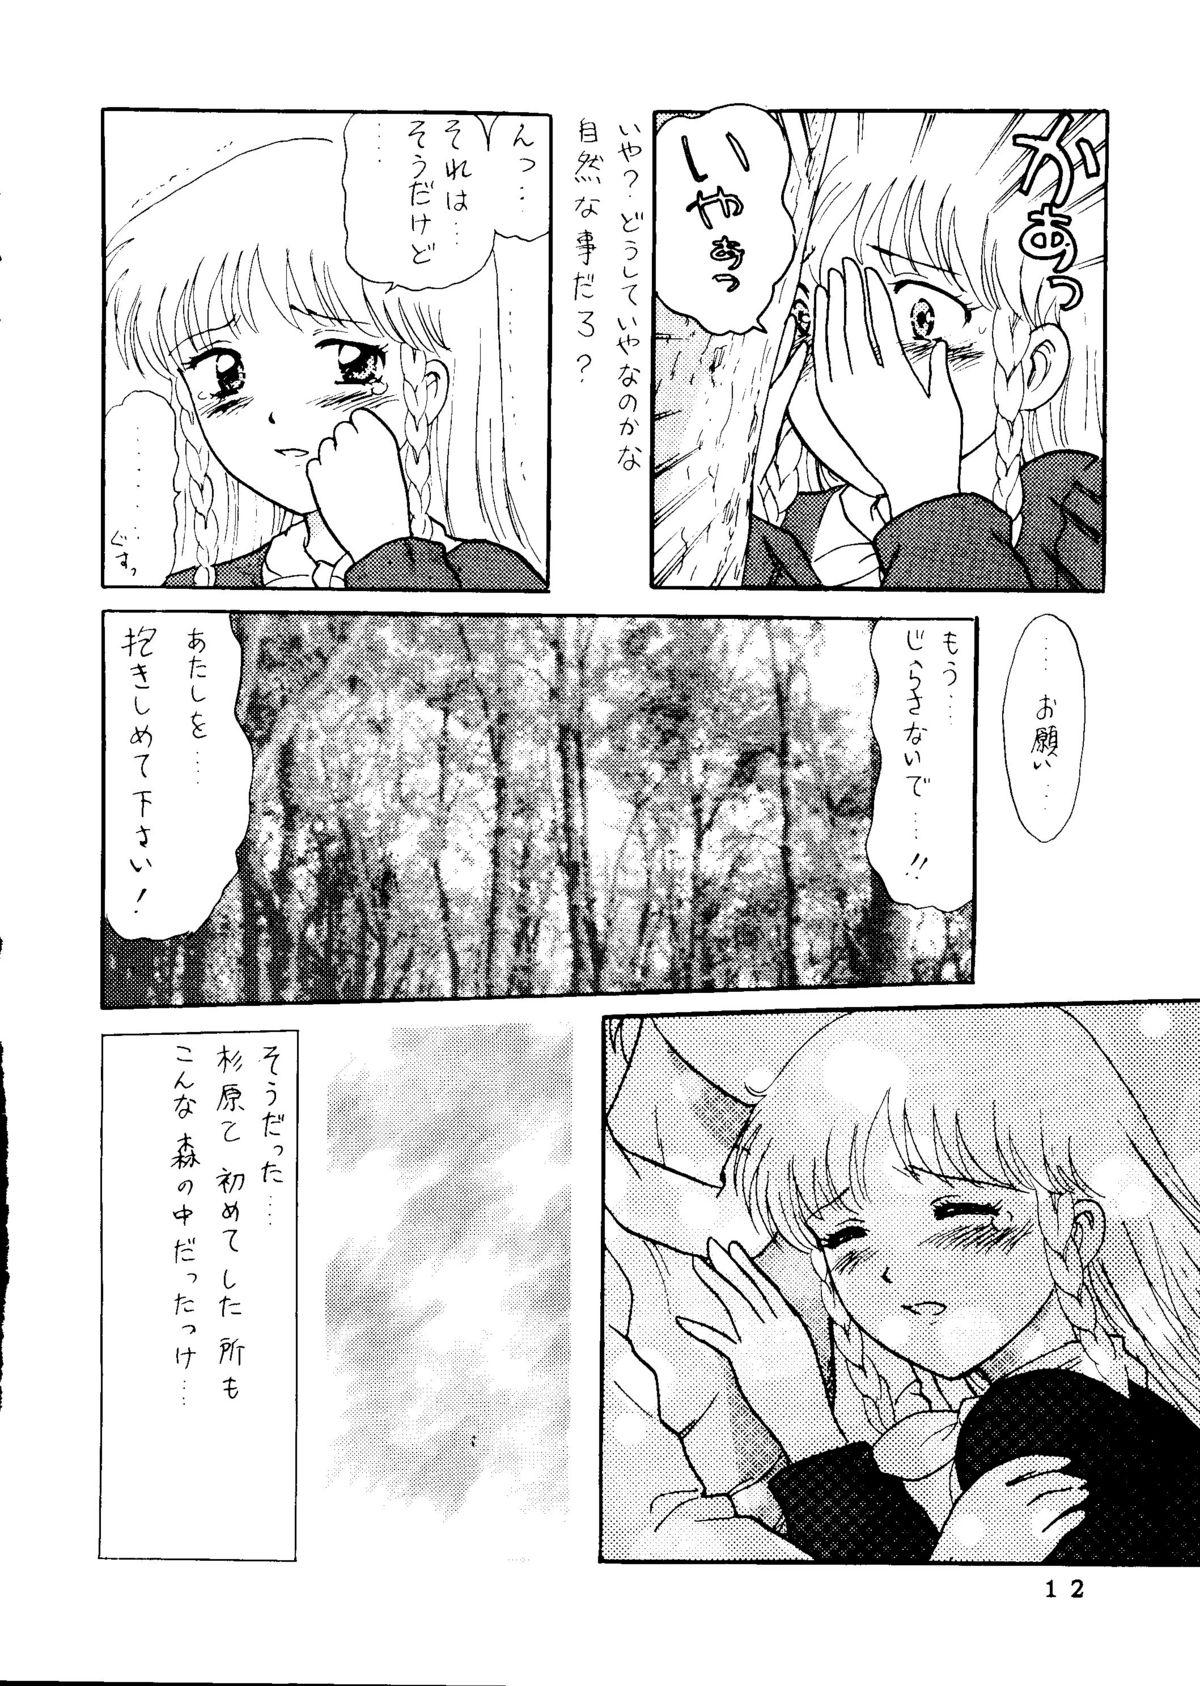 Sex Toys Sekai Seifuku Sailorfuku 14 - Sentimental graffiti Gay 3some - Page 7